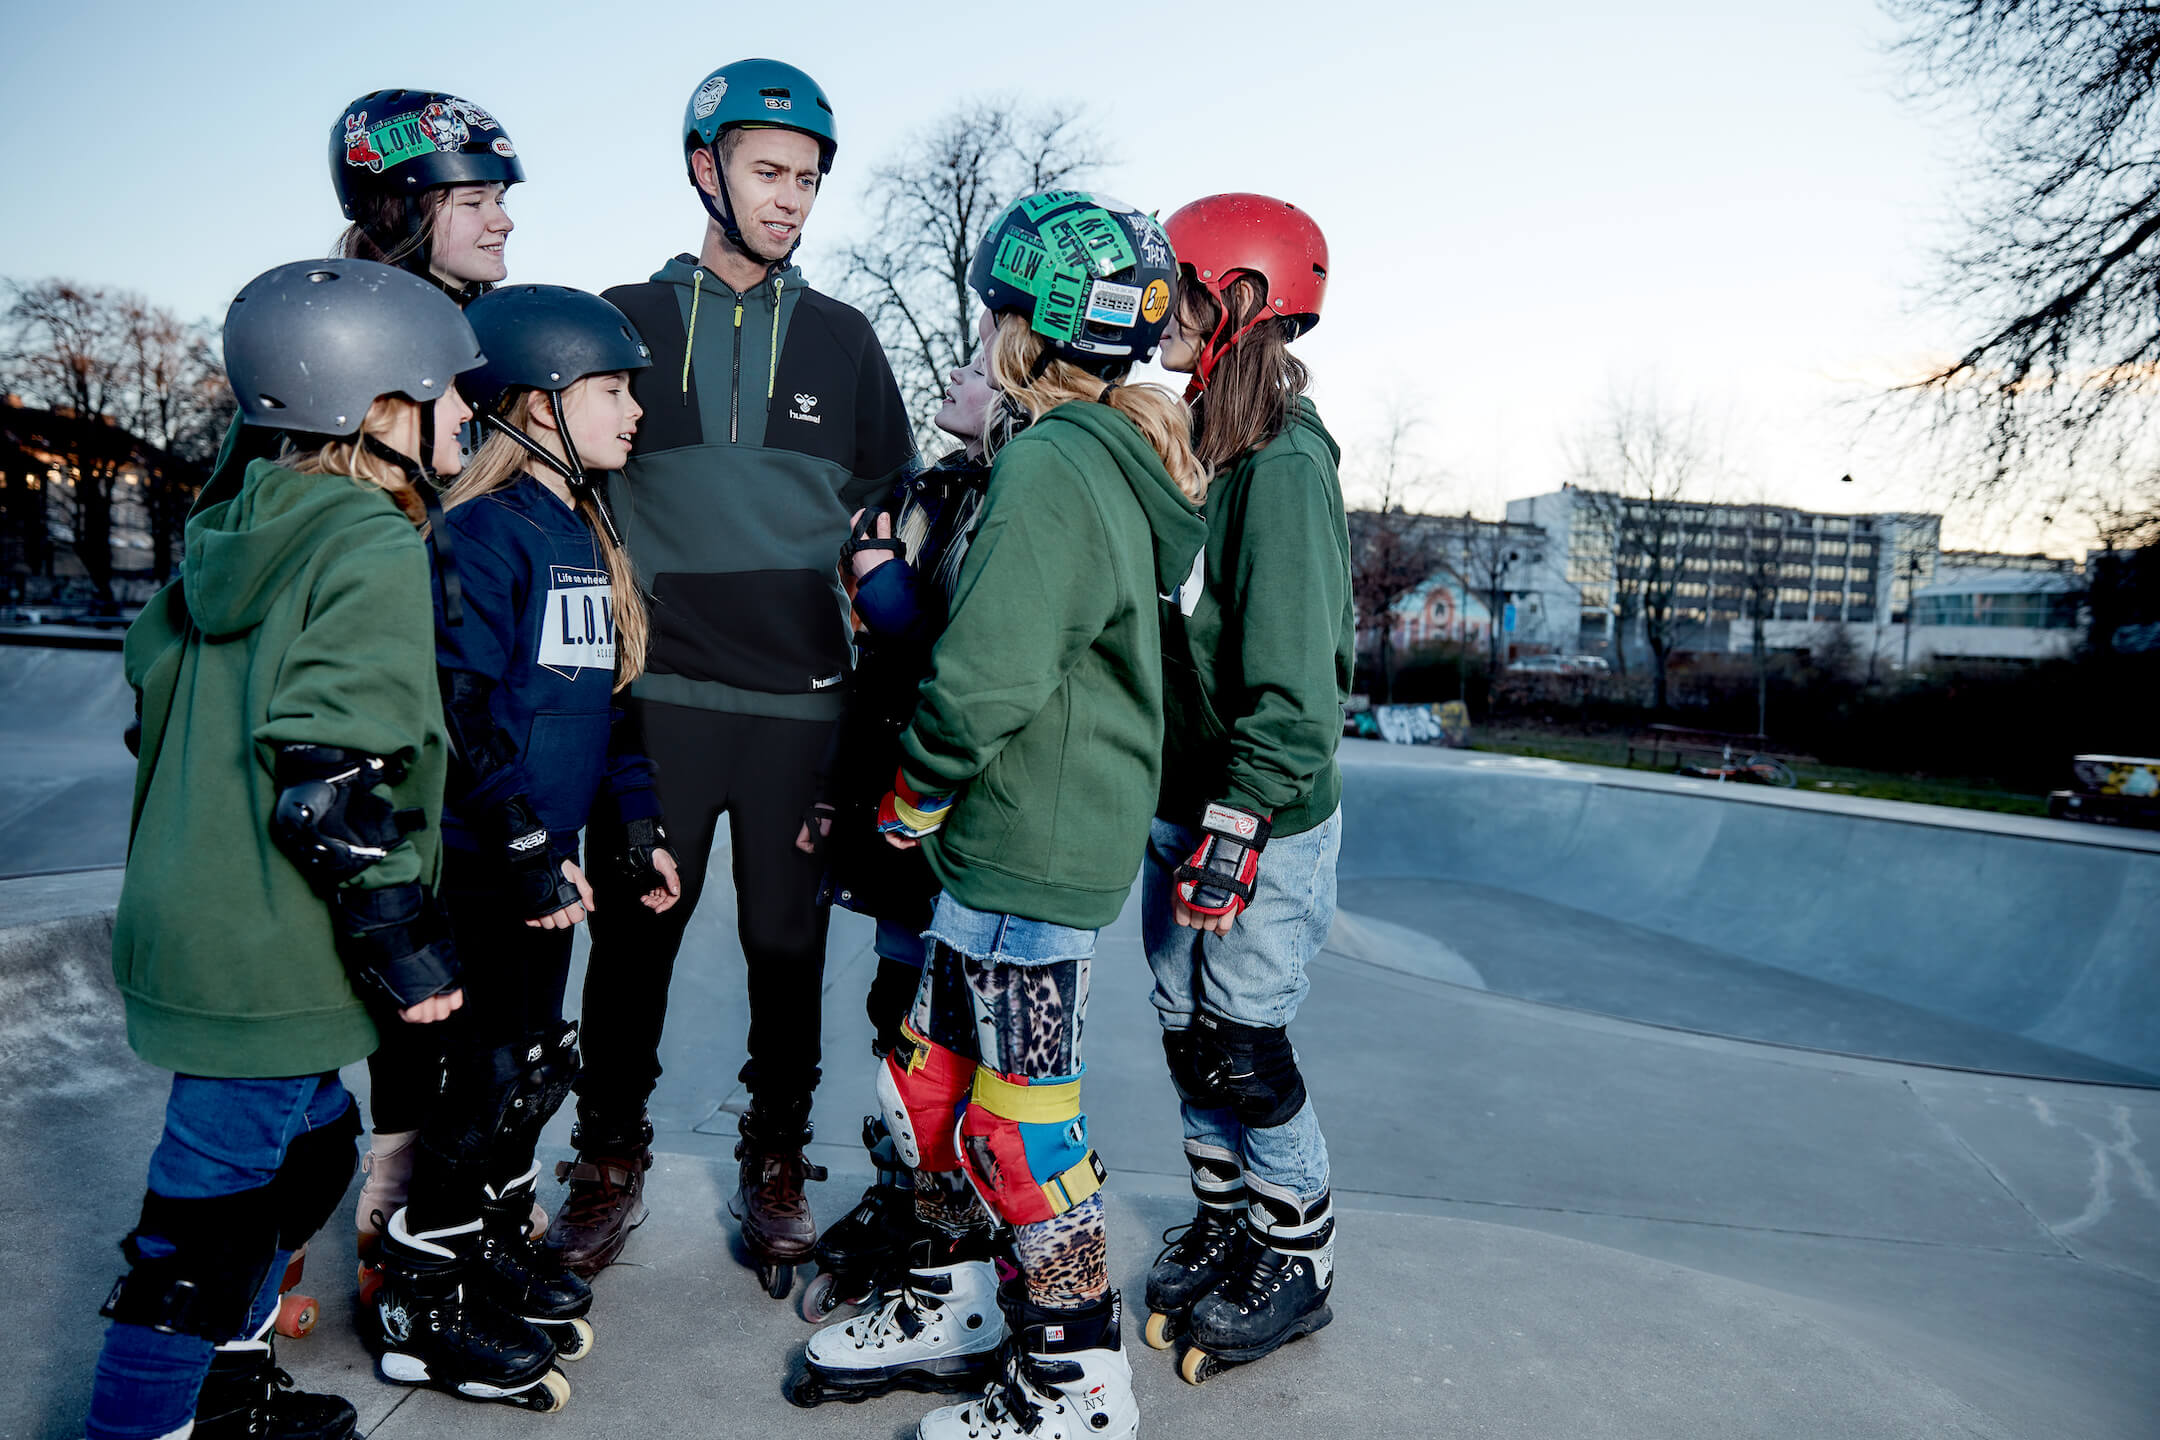 Midlertidig Børnecenter avis Helsingør Skatepark | L.O.W Skate Academy | Skateskole | lowacademy.dk